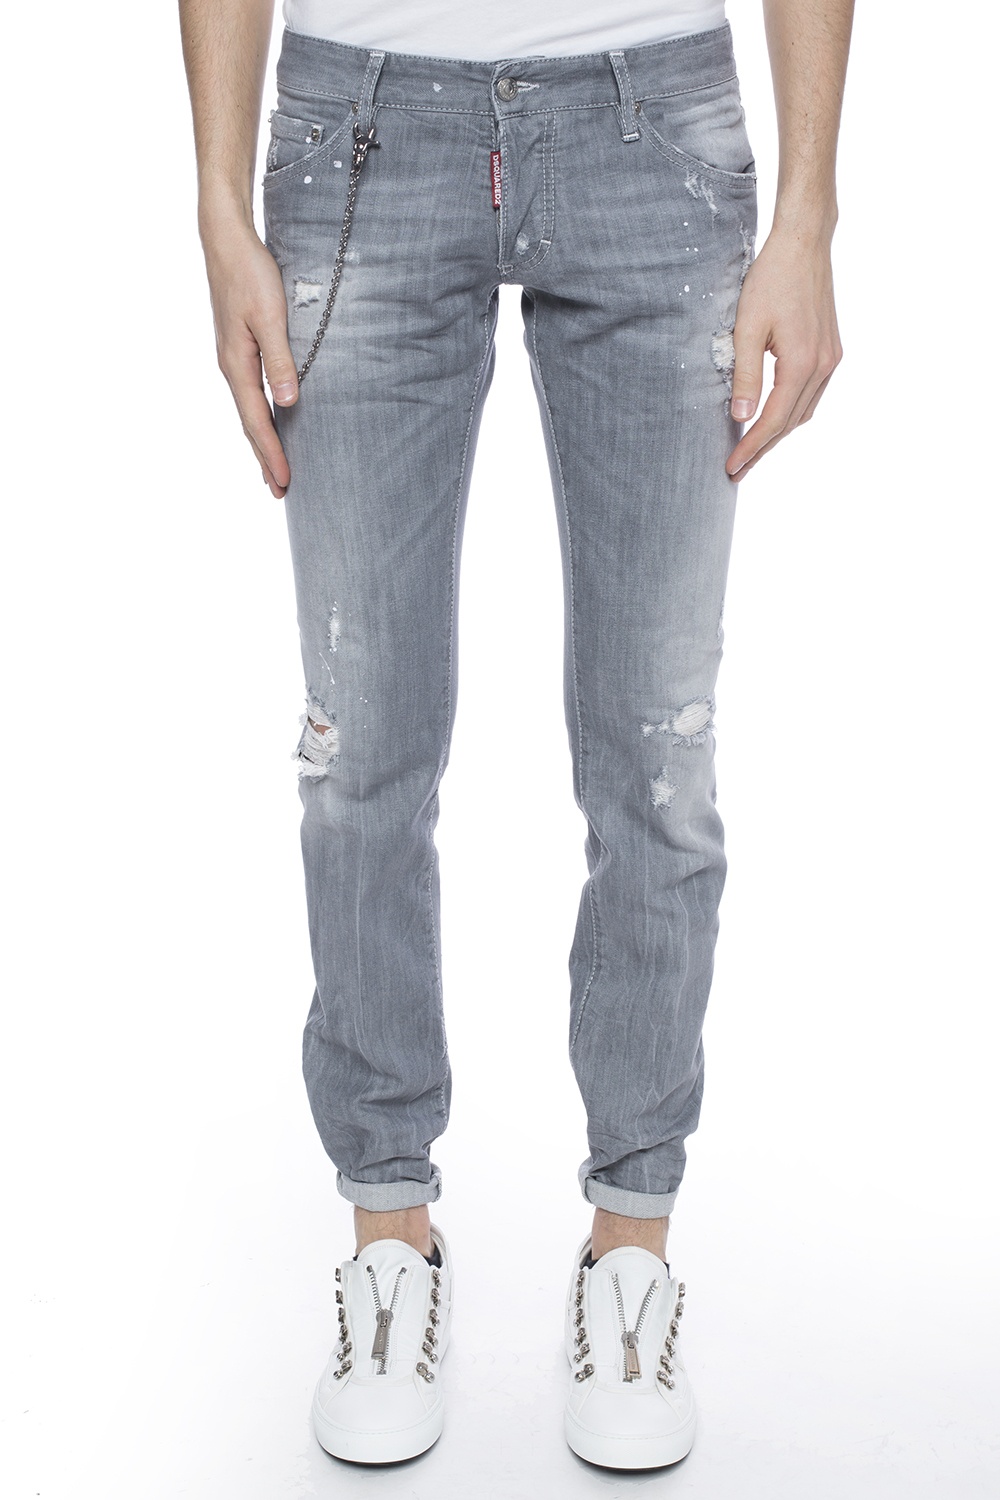 'Long Clement Jean' jeans Dsquared2 - Vitkac France